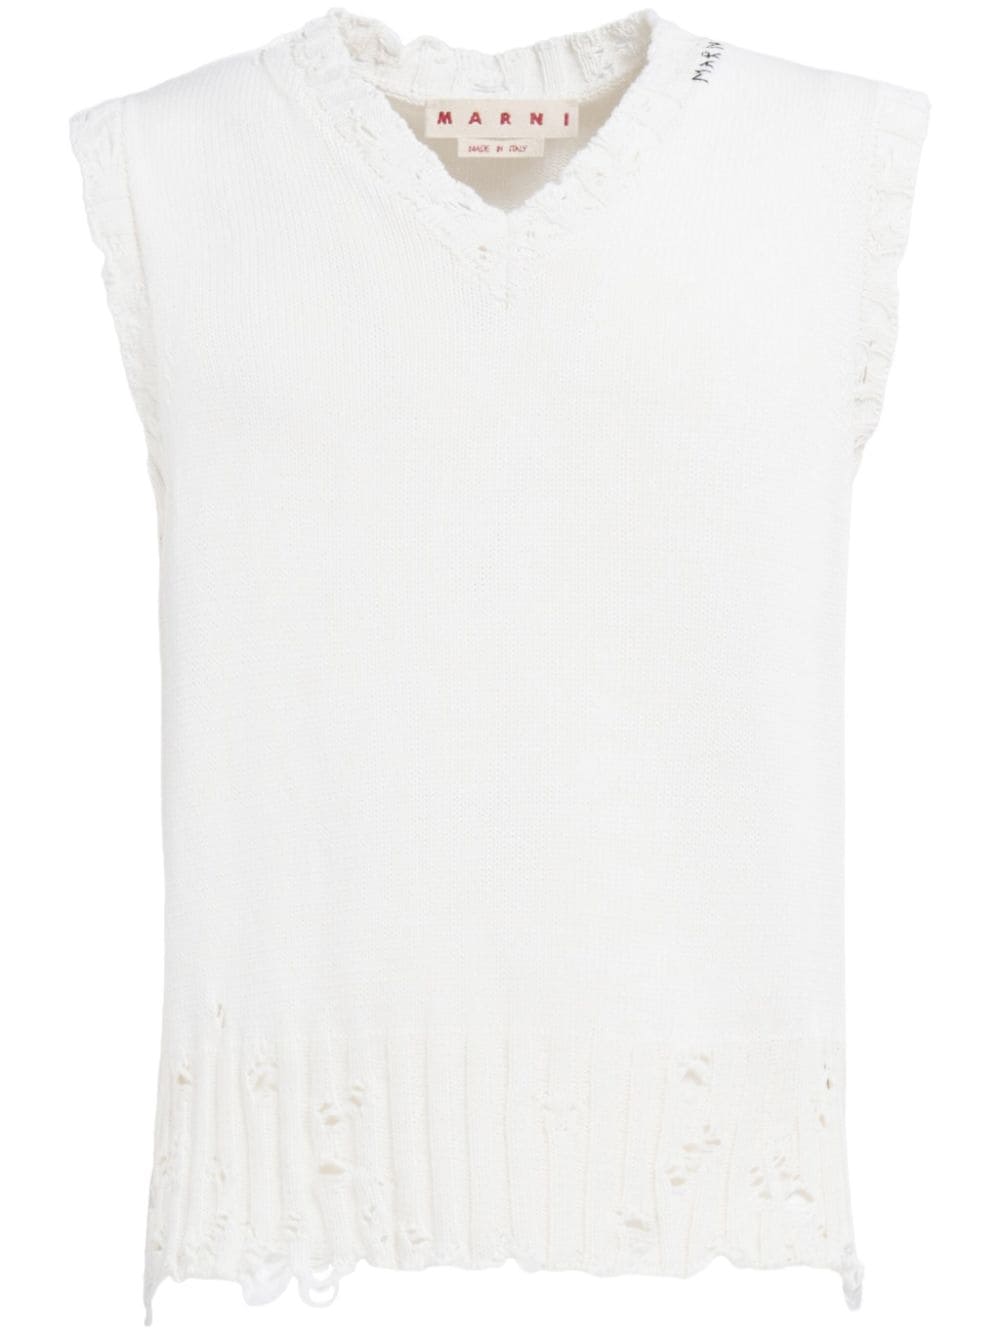 Marni distressed sweater vest - White von Marni